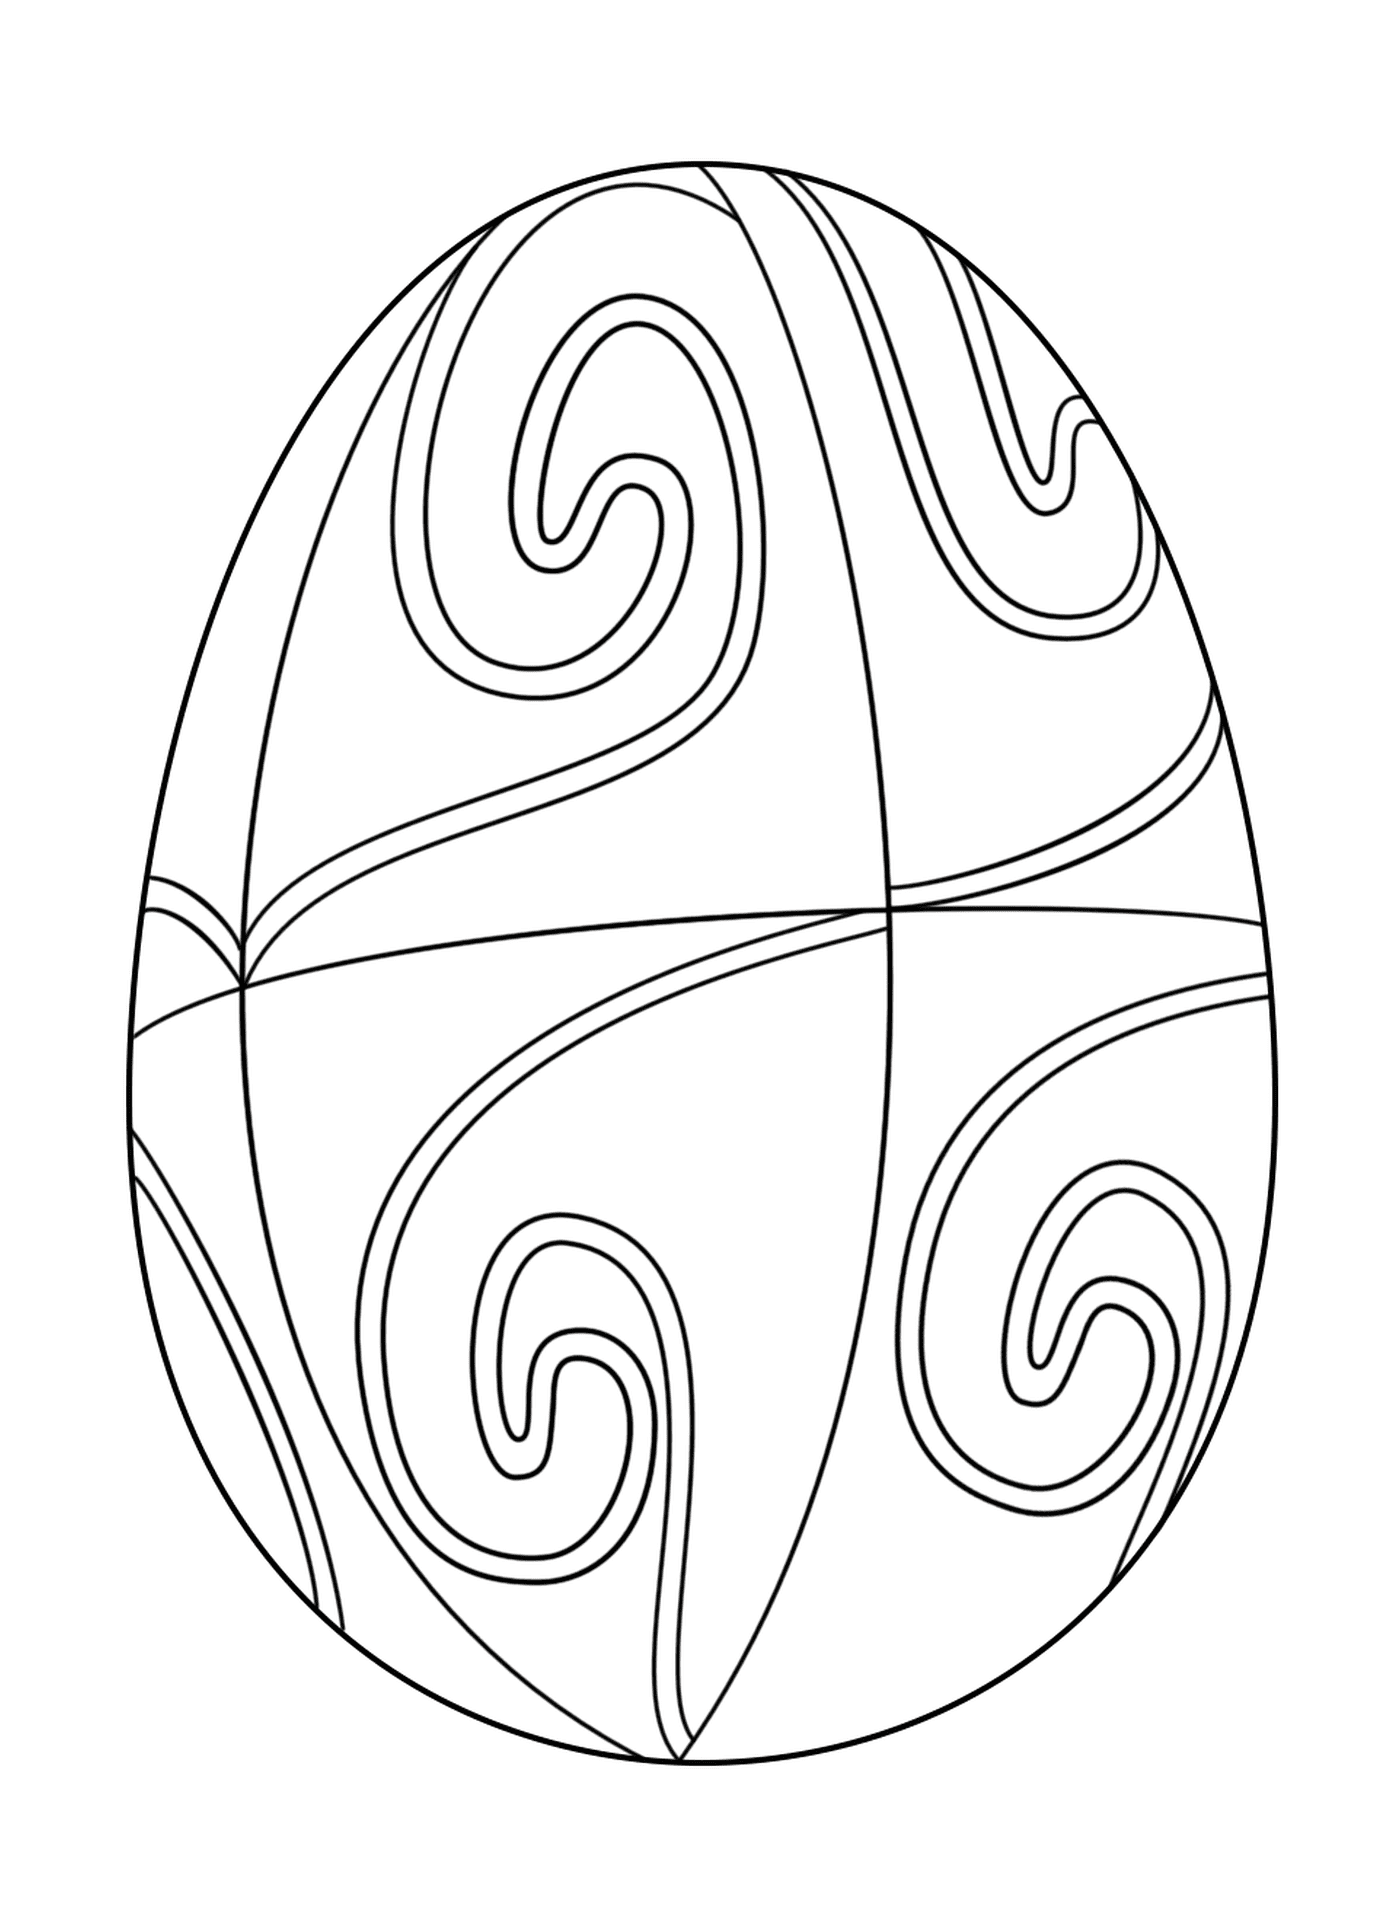  Ovo de Páscoa com padrão espiral 